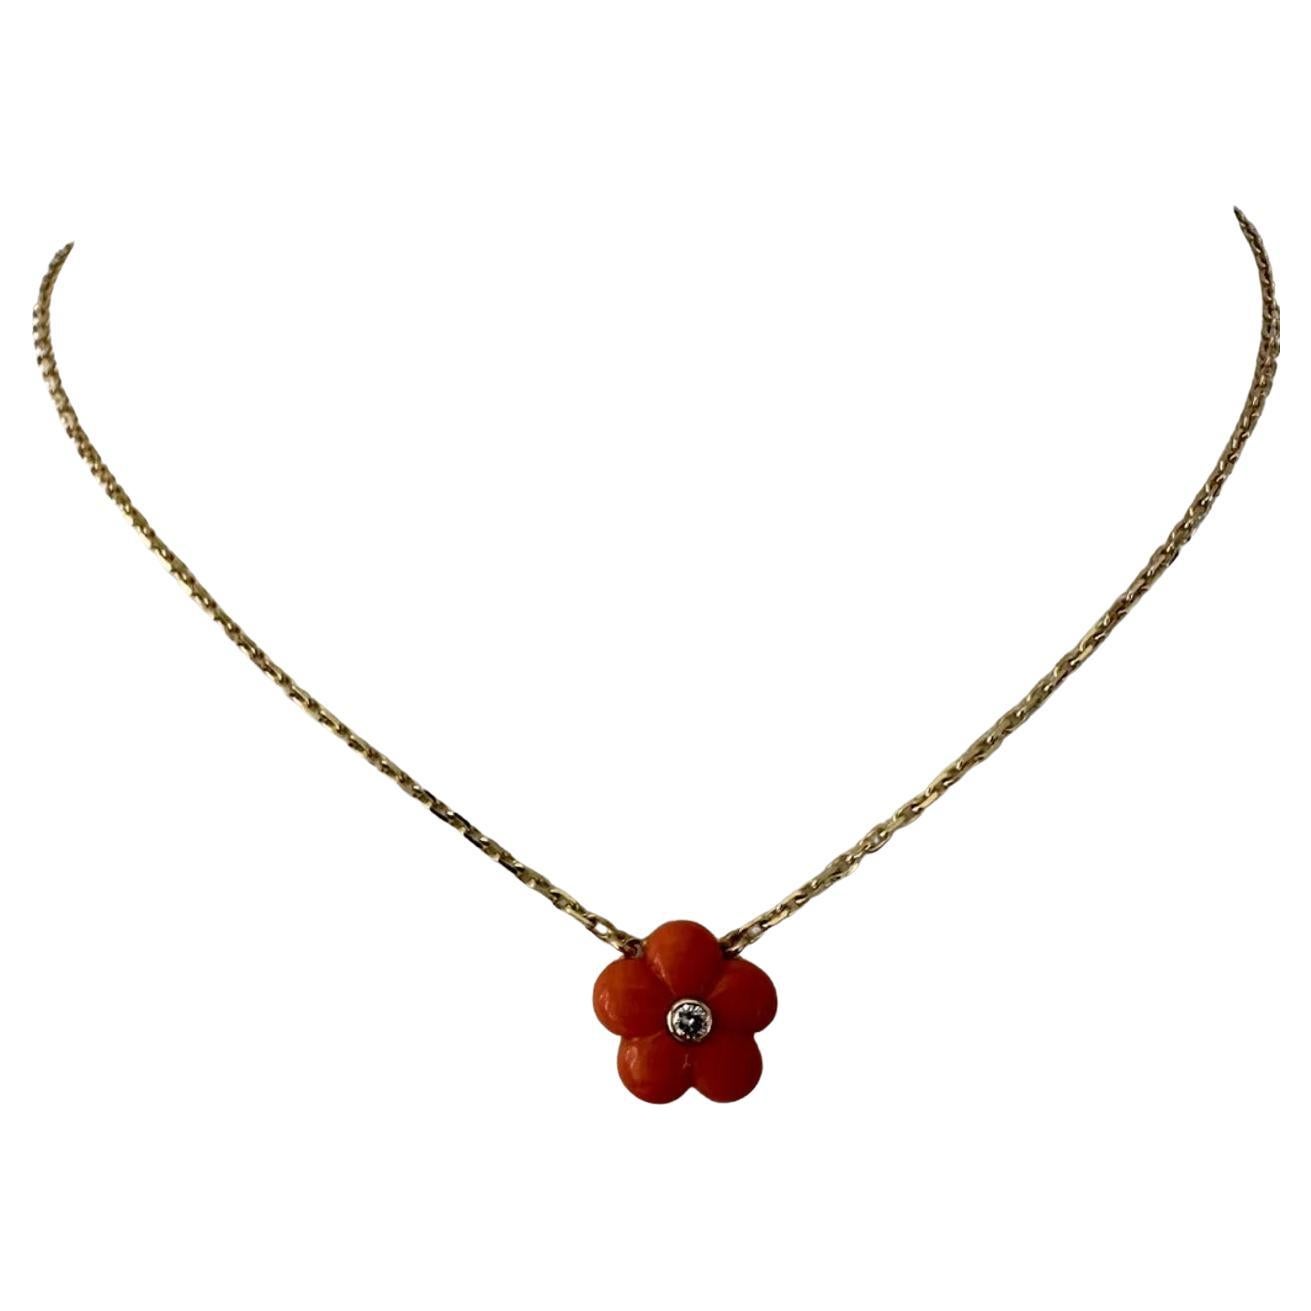 Post-War Pendant Necklaces